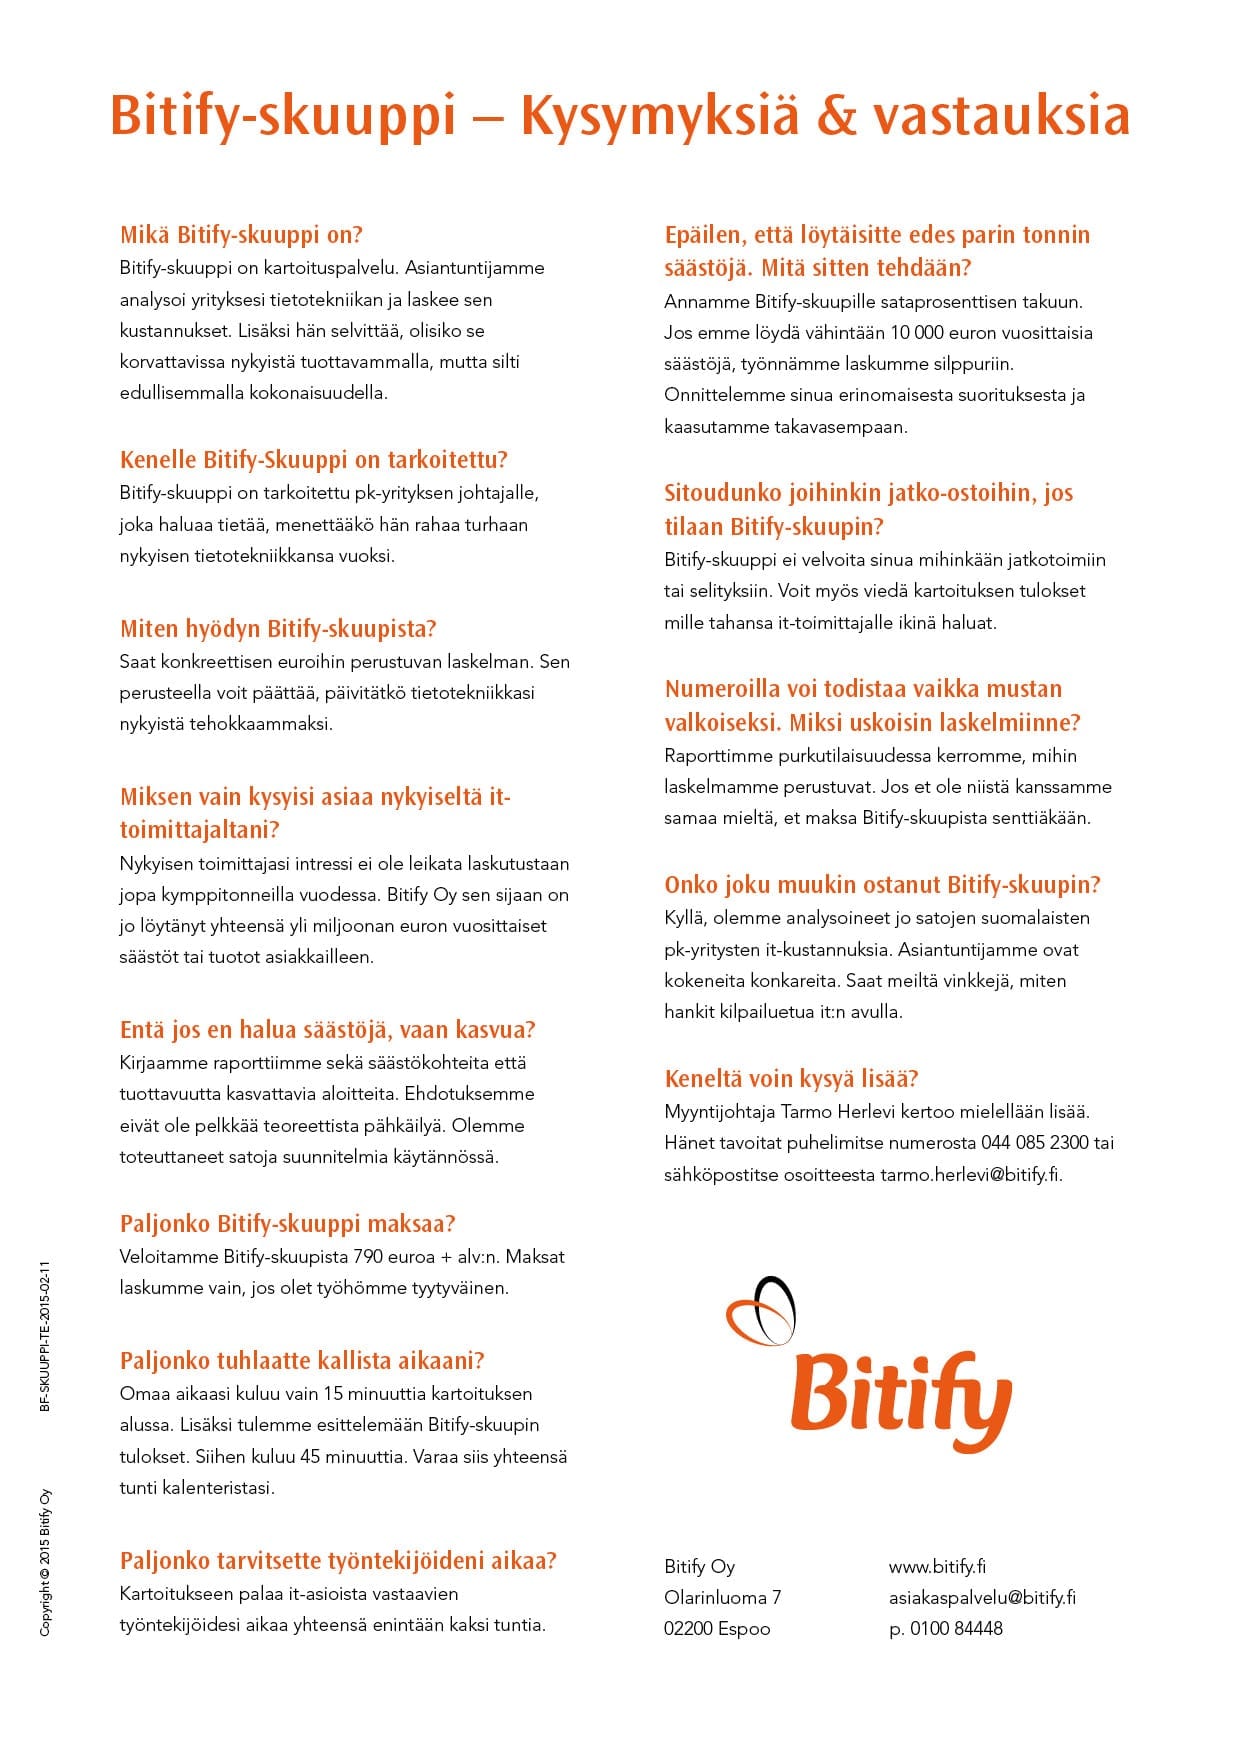 Bitify-skuuppi-esite, sivu 4